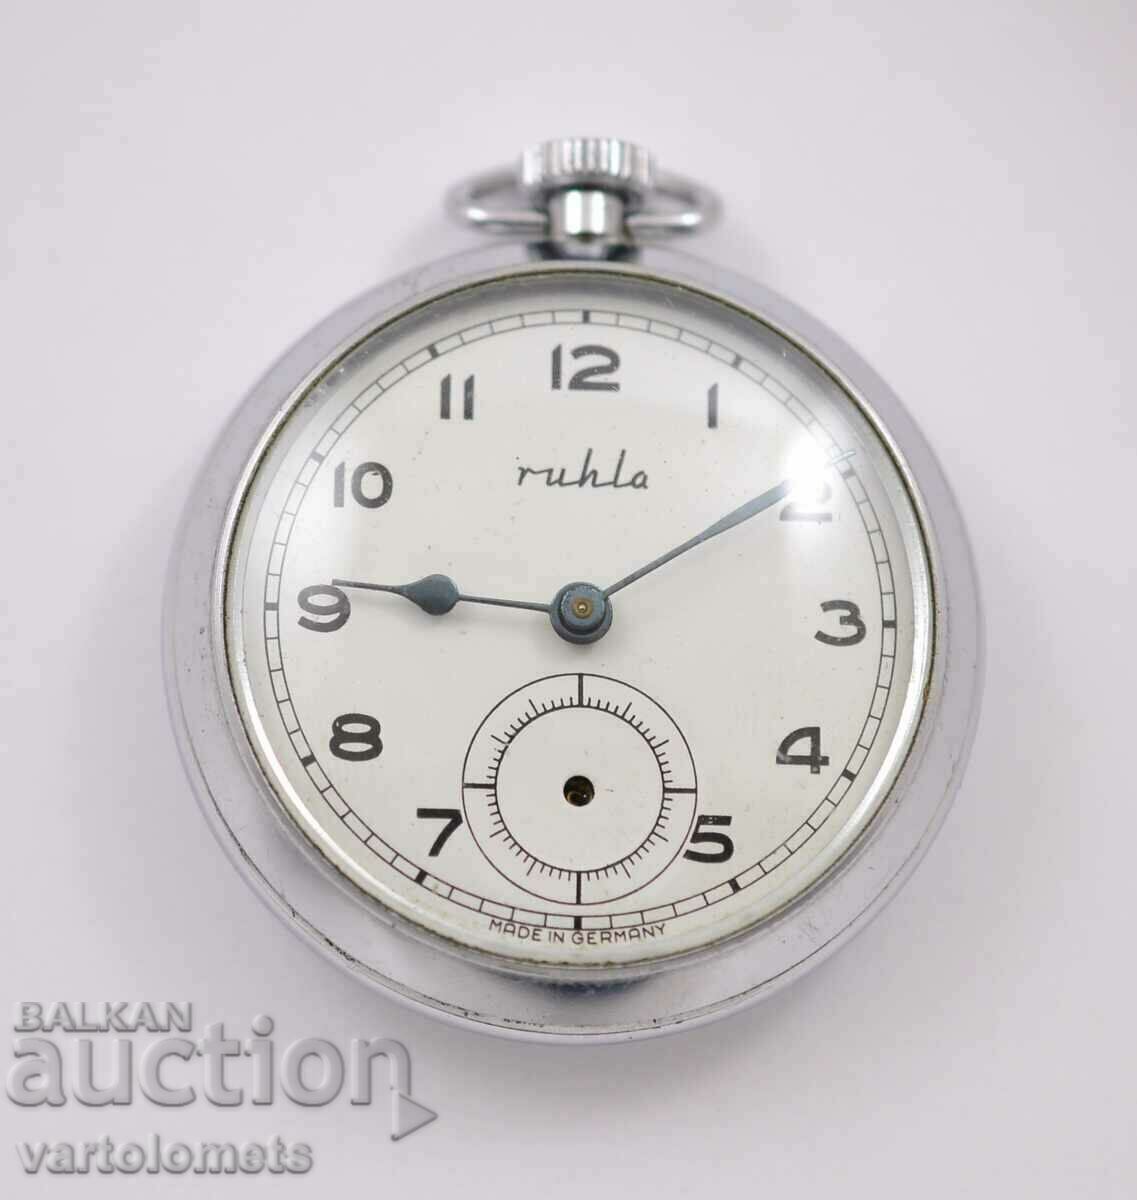 Vintage ρολόι τσέπης RUHLA - δεν λειτουργεί